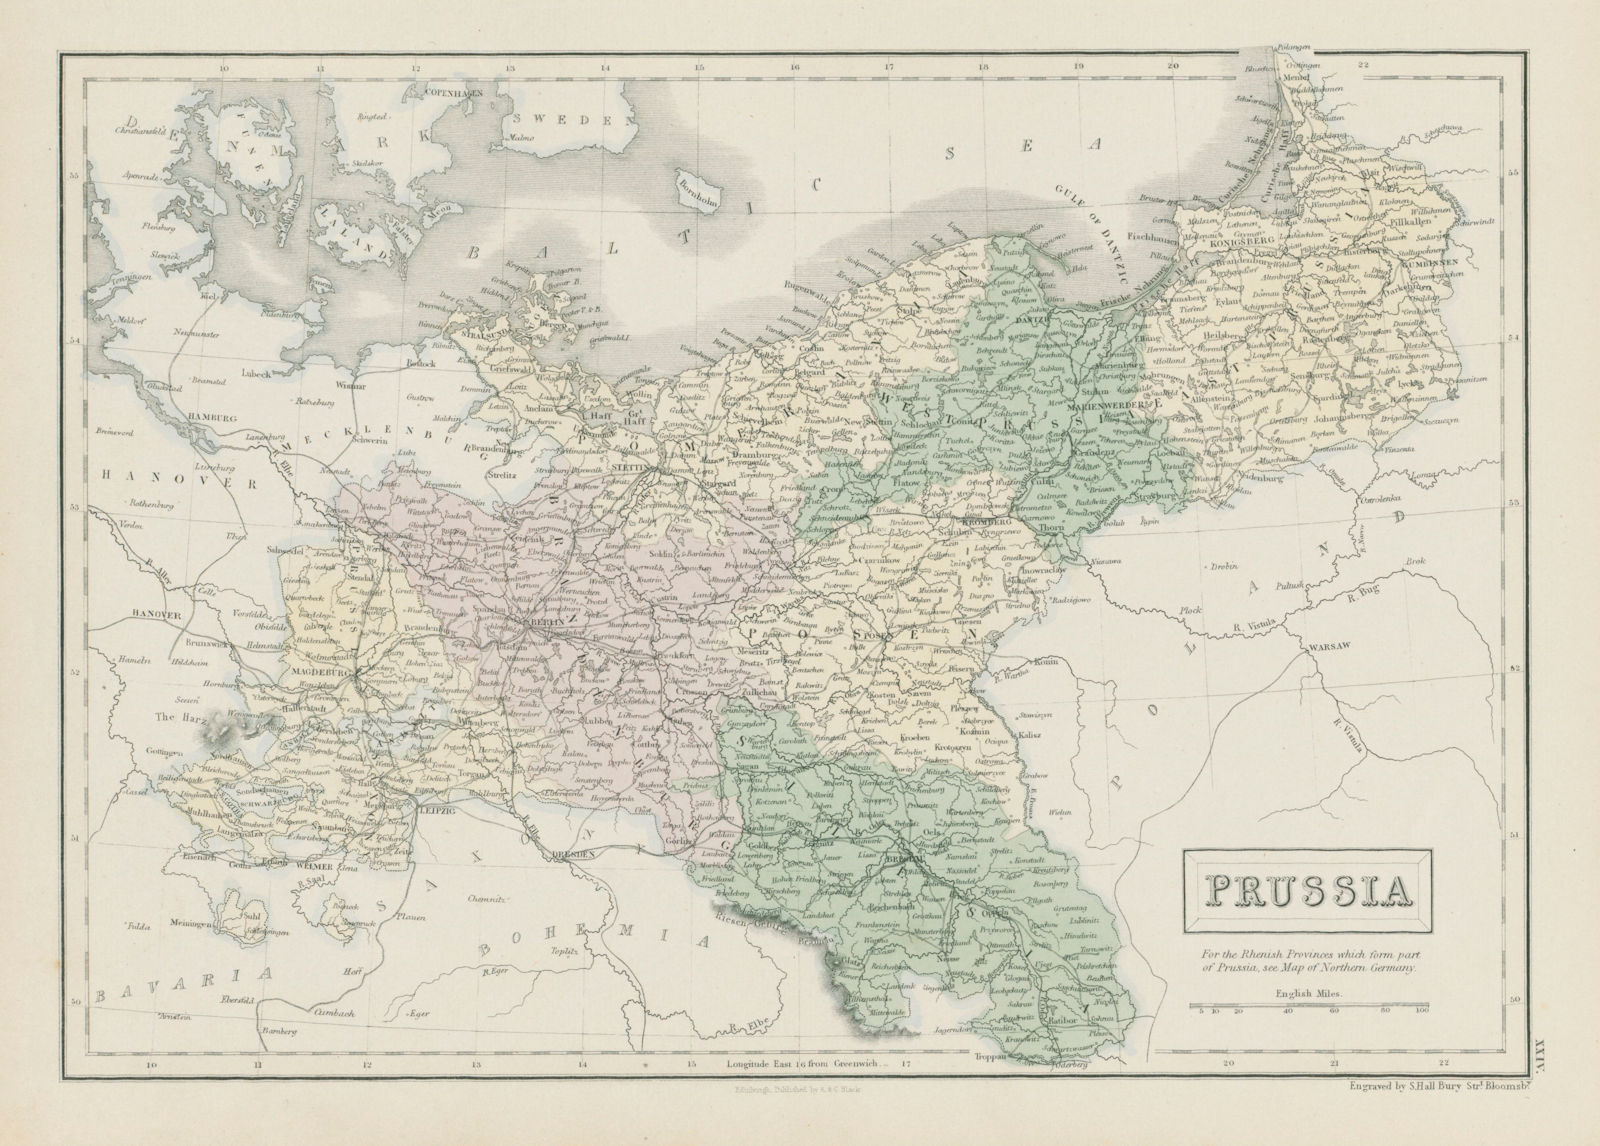 Prussia. Pomerania Poland Silesia Posen Brandenburg. SIDNEY HALL 1856 old map